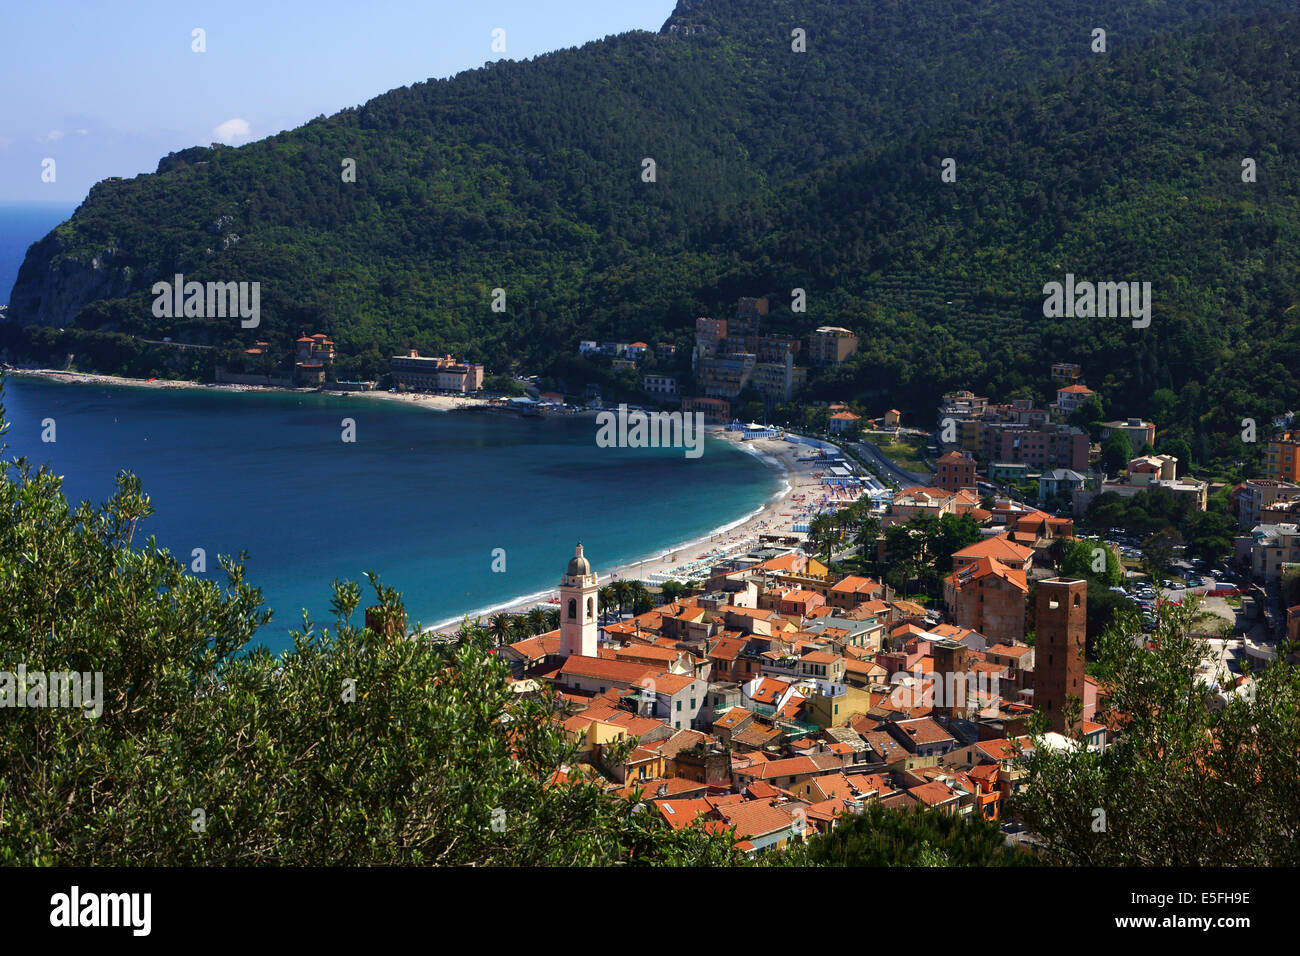 View over medieval town Noli, Riviera di Ponenete, Liguria, Italy Stock Photo